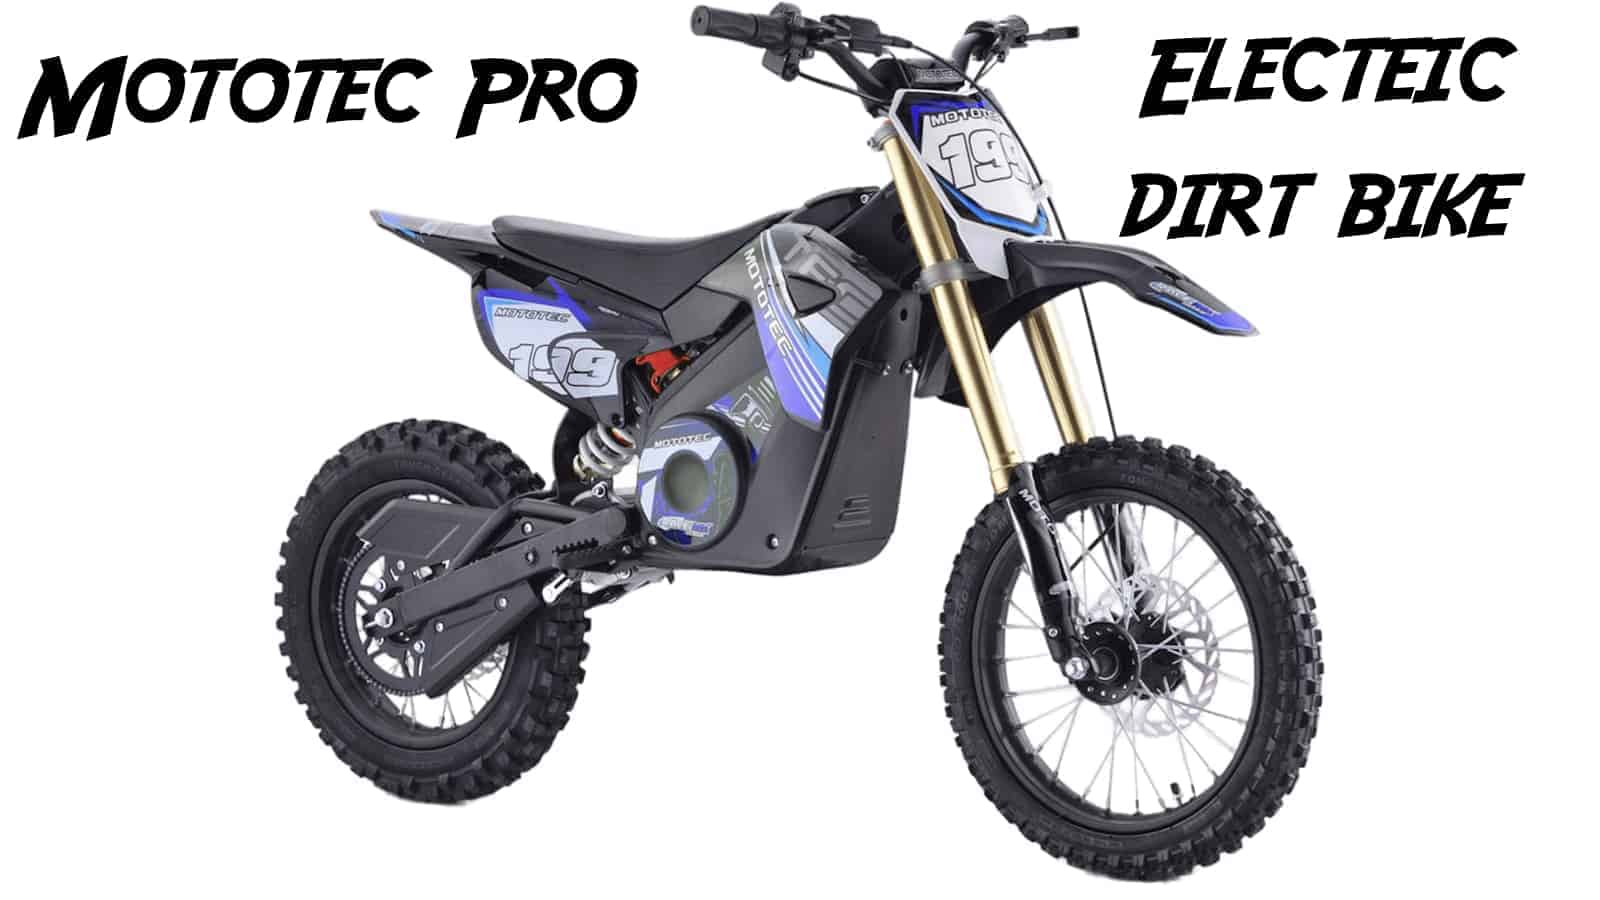 mototec-pro electric dirt bike review